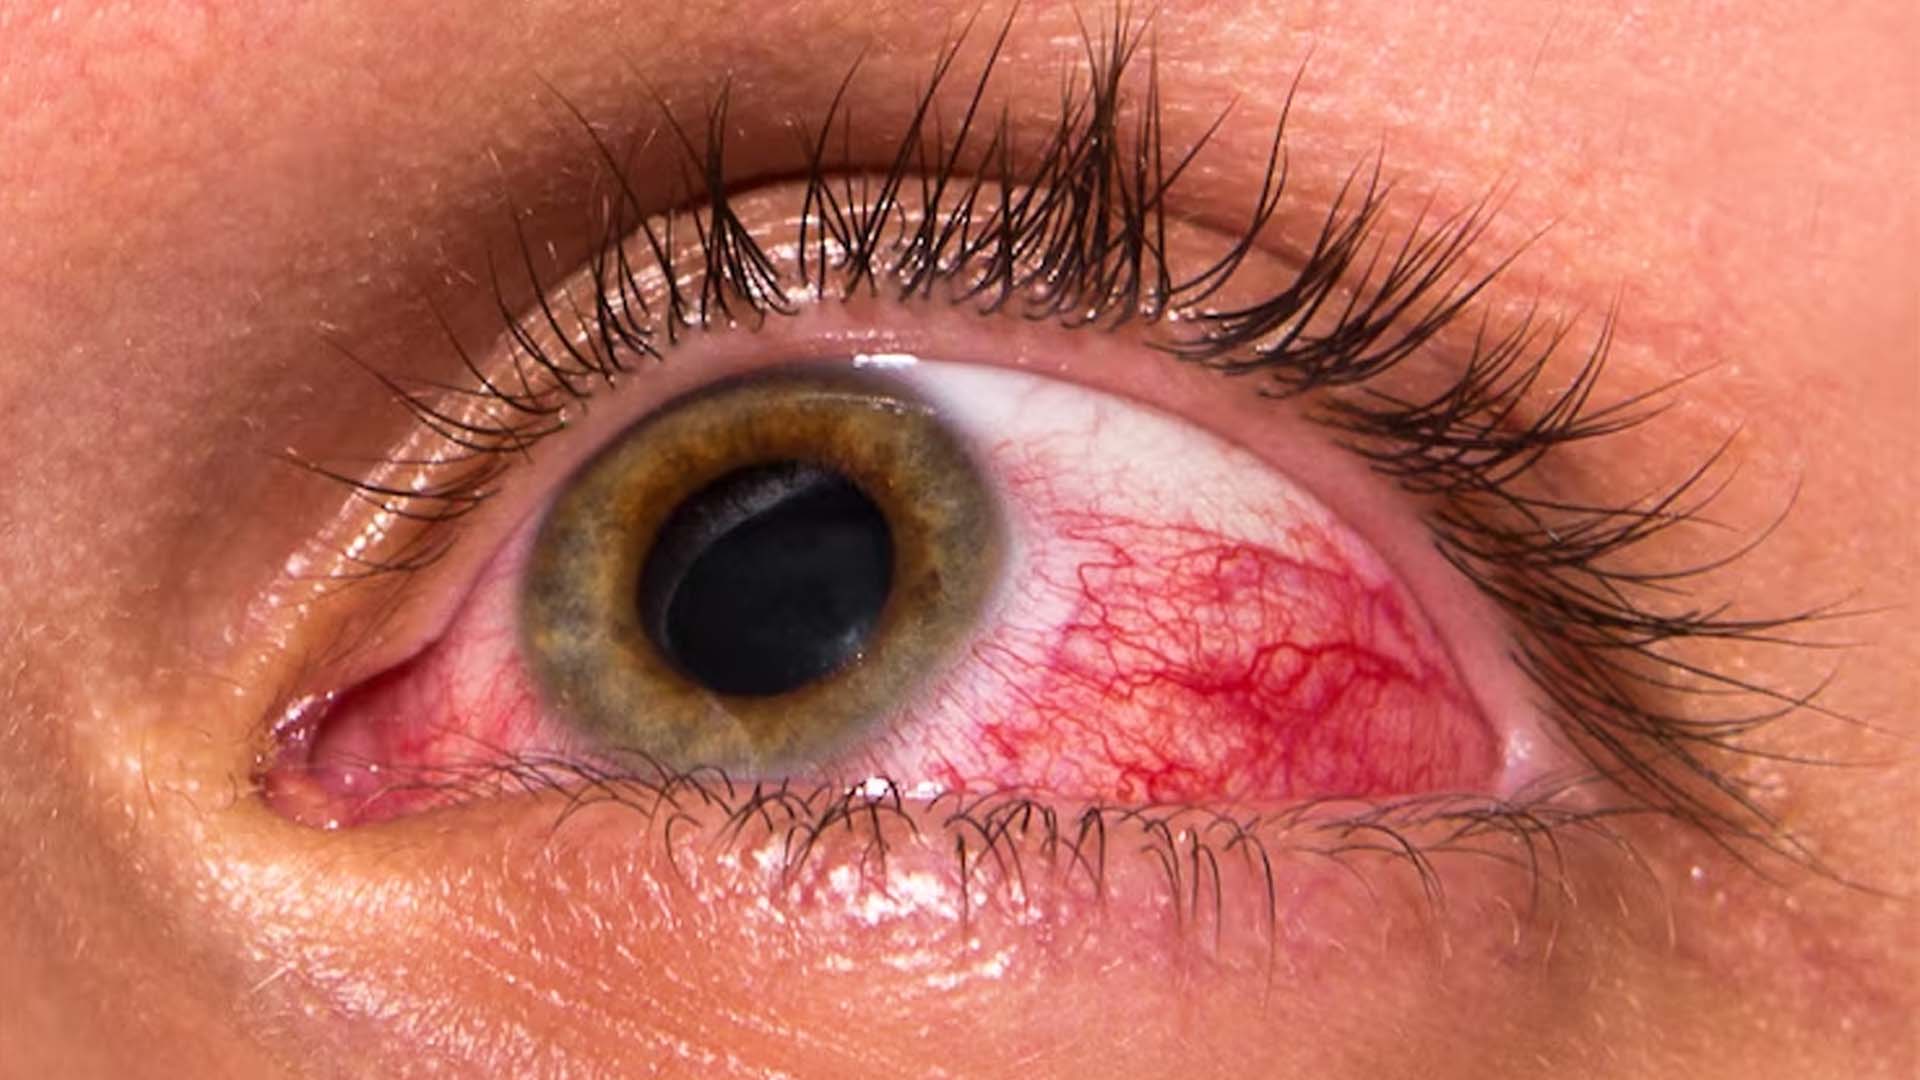 A burst blood vessel in the eye